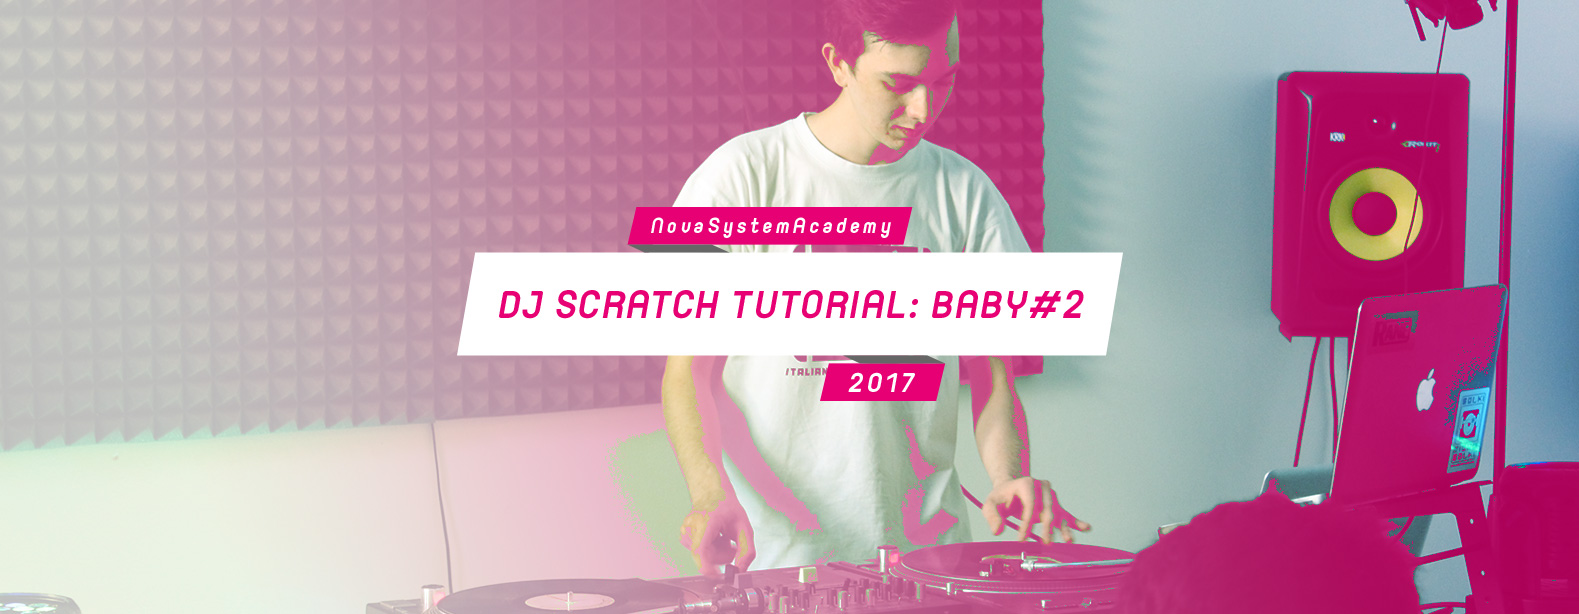 img_top_DjScratch_tutorial_baby2